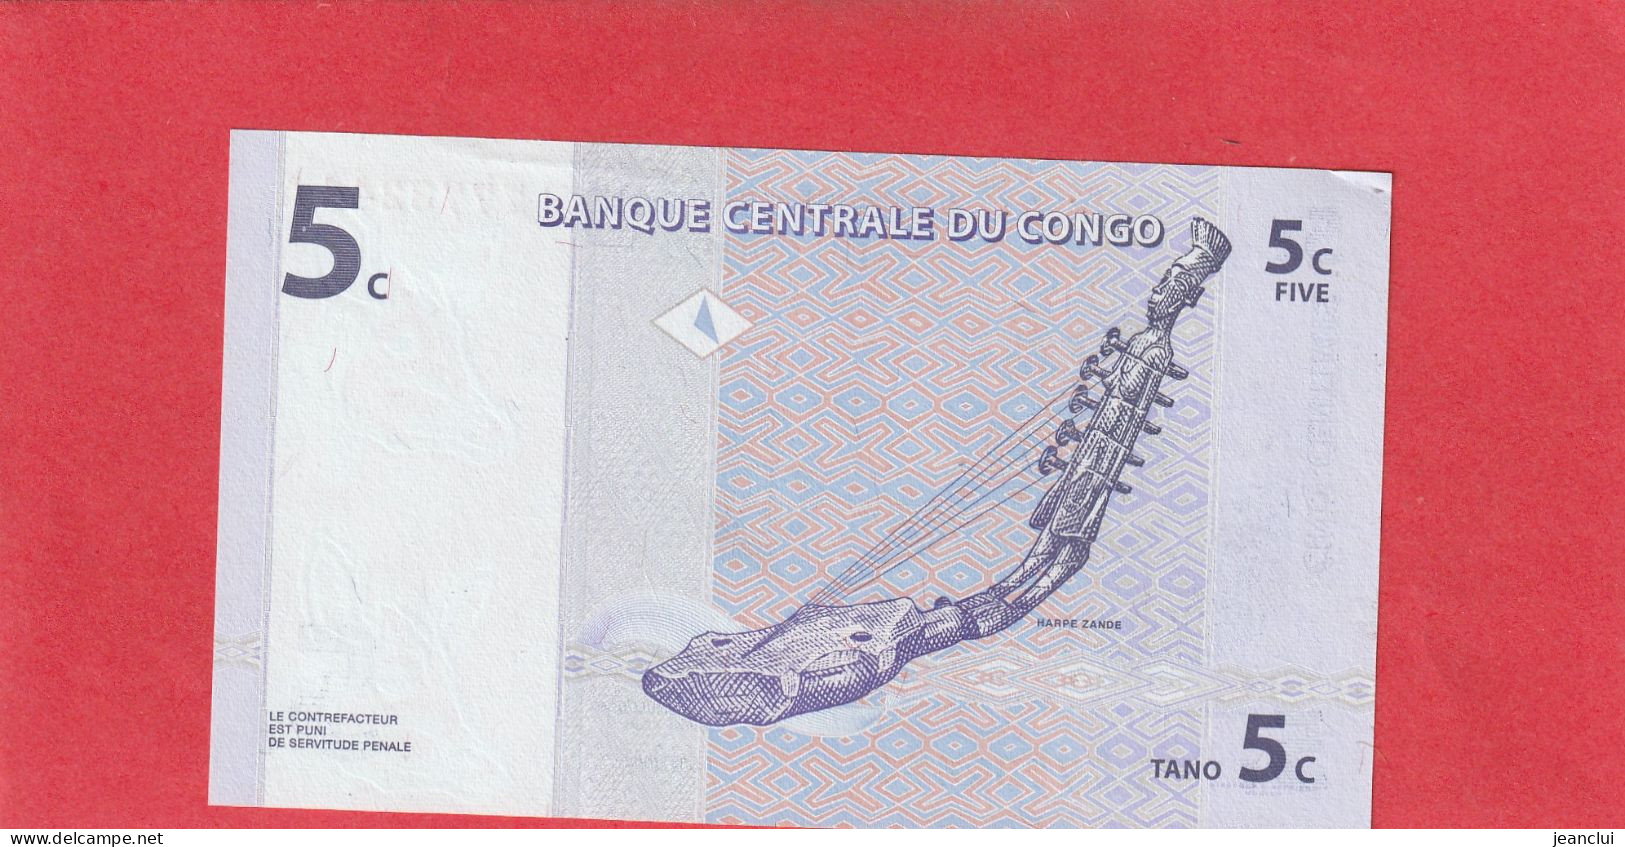 BANQUE CENTRALE DU CONGO  .  5 CENTIMES  .  01-11-1997  .  N°  B 7773244 A  .  BILLET EN TRES BEL ETAT  .  2 SCANNES - República Democrática Del Congo & Zaire